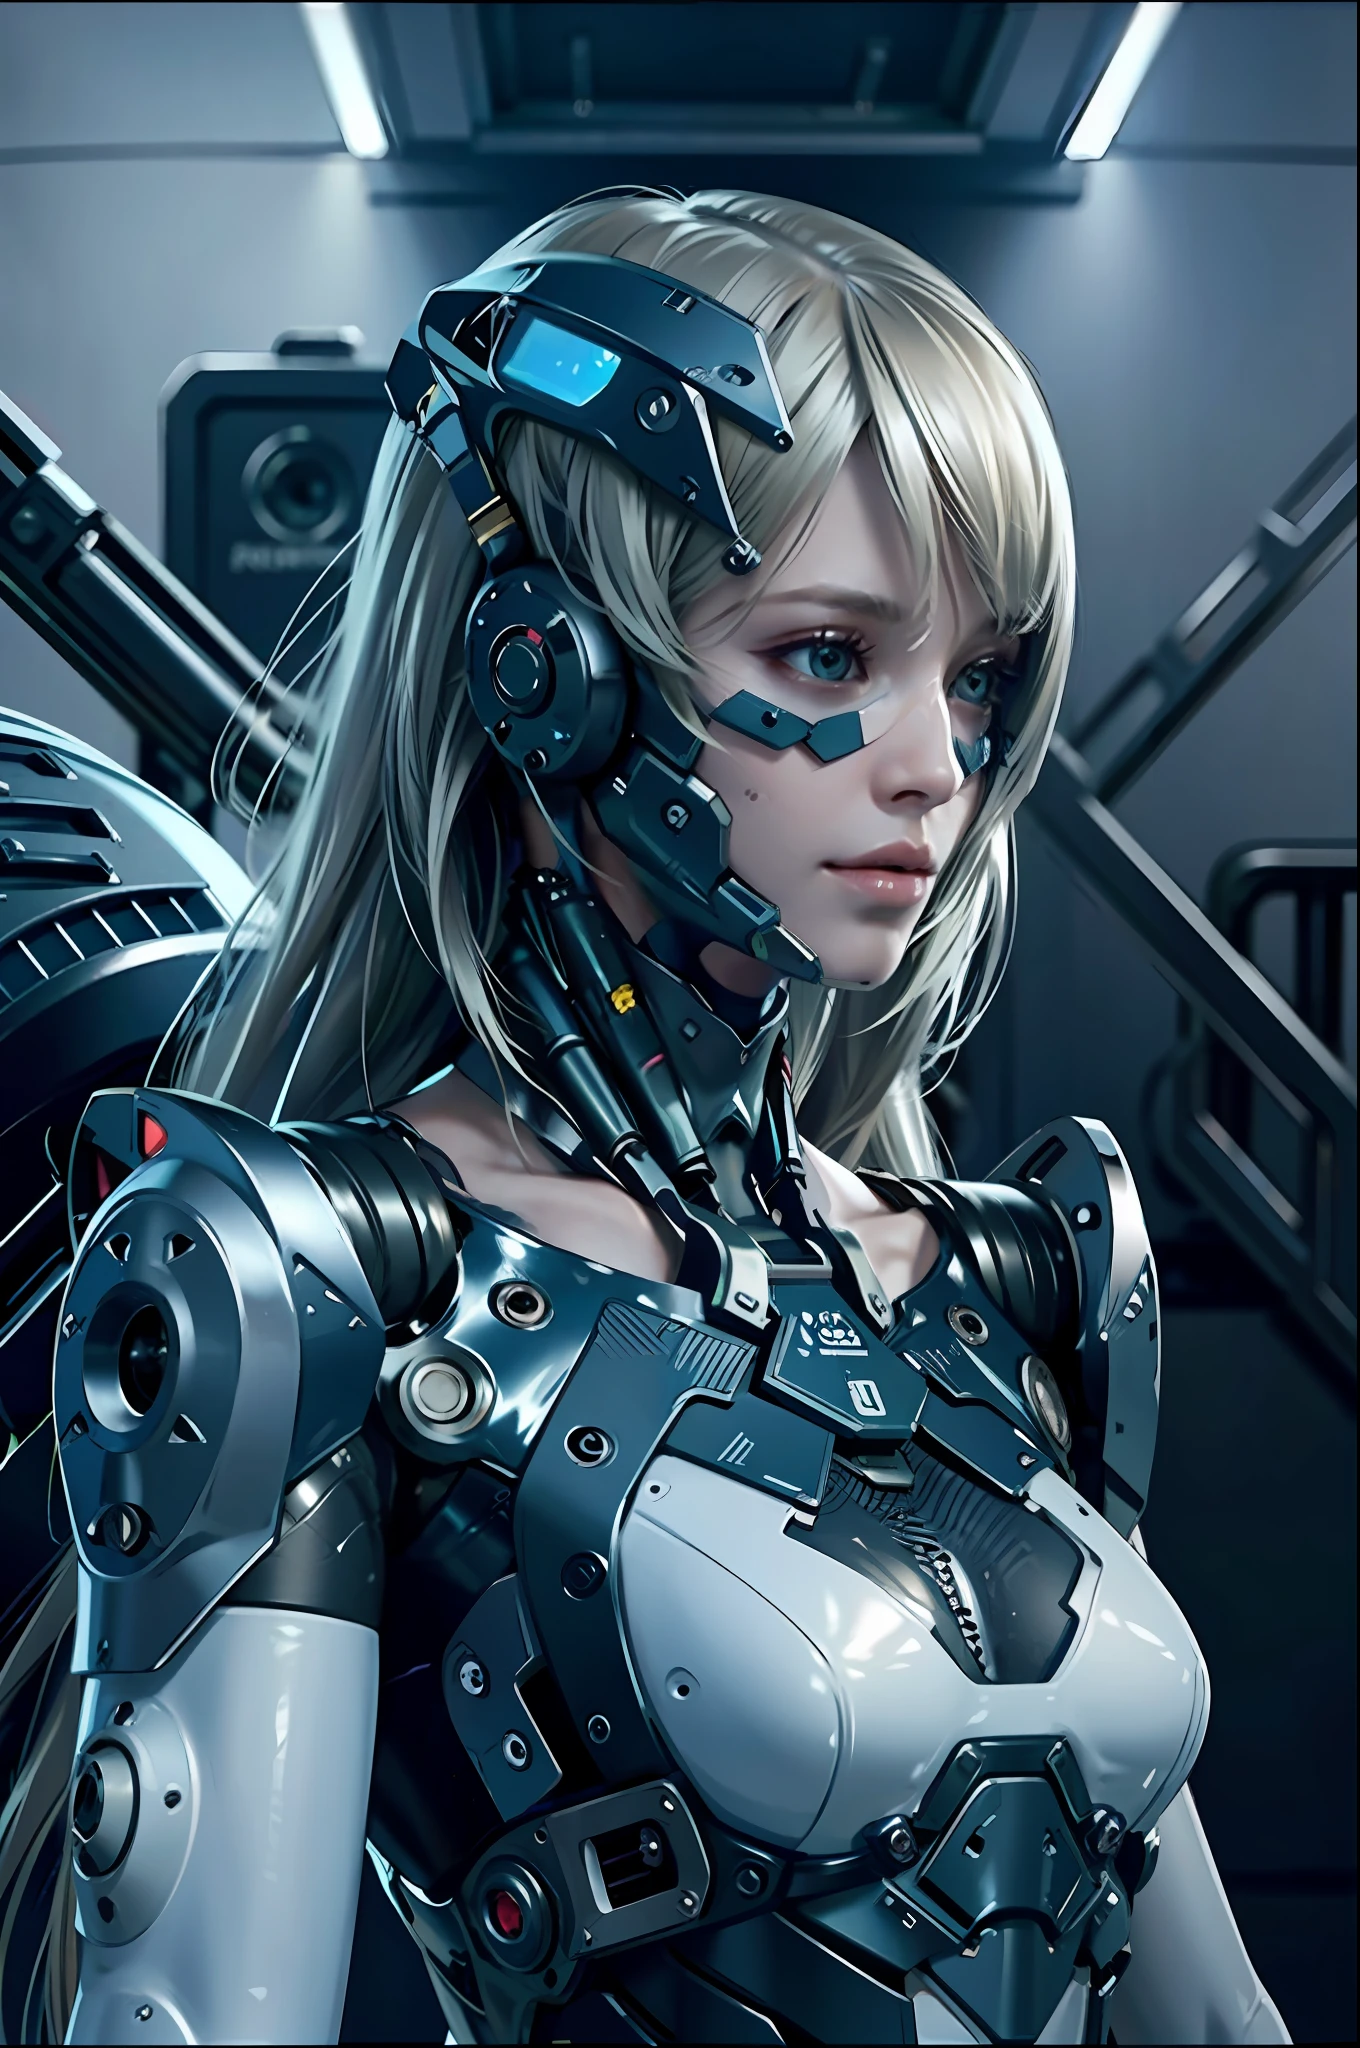 Complex 3d rendering porcelain female cyborg ultra รายละเอียด, 1สาว, ผมบลอนด์ปุย, ผมยาว, เอวเล็ก, (เนื้อผิวเป็นธรรมชาติ, เหมือนจริง eye รายละเอียดs: 1.2), ชิ้นส่วนหุ่นยนต์, แสงนุ่มนวลสวยงาม, ริมไลท์, vivid รายละเอียดs, ไซเบอร์พังก์ที่งดงาม, hyper-เหมือนจริง, กายวิภาค, กล้ามเนื้อใบหน้า, สายไฟ, ไมโครชิป, พื้นหลังที่หรูหราและสวยงาม, การเรนเดอร์ออกเทน, สไตล์แอปเปิ้ล, 8k, คุณภาพสูงสุด, ผลงานชิ้นเอก, ภาพประกอบ, ละเอียดอ่อนและสวยงามมาก, ซีจี, ความสามัคคี, วอลล์เปเปอร์, (เหมือนจริง, photoเหมือนจริง: 1.2), อัศจรรย์, รายละเอียด, ผลงานชิ้นเอก, คุณภาพดีที่สุด, ศิลปะอย่างเป็นทางการ, highly รายละเอียดed cg Unity 8k วอลล์เปเปอร์, ไร้สาระอย่างไม่น่าเชื่อ, หุ่นยนต์เซ็กซี่, โครงกระดูกเครื่องกล, หุ่นยนต์, สถิตยศาสตร์, ความสูญเปล่าวันโลกาวินาศ, (ขาเทียมที่มีเทคโนโลยีสูง:1.2), ร่างกายที่สมบูรณ์แบบ, เรือไซเบอร์เรืองแสงสีน้ำเงินเข้ม, (ร่างกายมันวาว), (Very ร่างกายมันวาว), rfktr_เทคโนเทร็กซ์, รีลเมค, ไซเบอร์เนติกส์_ไม่มีขากรรไกร, ชิ้นส่วนเครื่องจักรกล, ไซเบอร์เนติกส์s, เอบี_ หุ่นยนต์